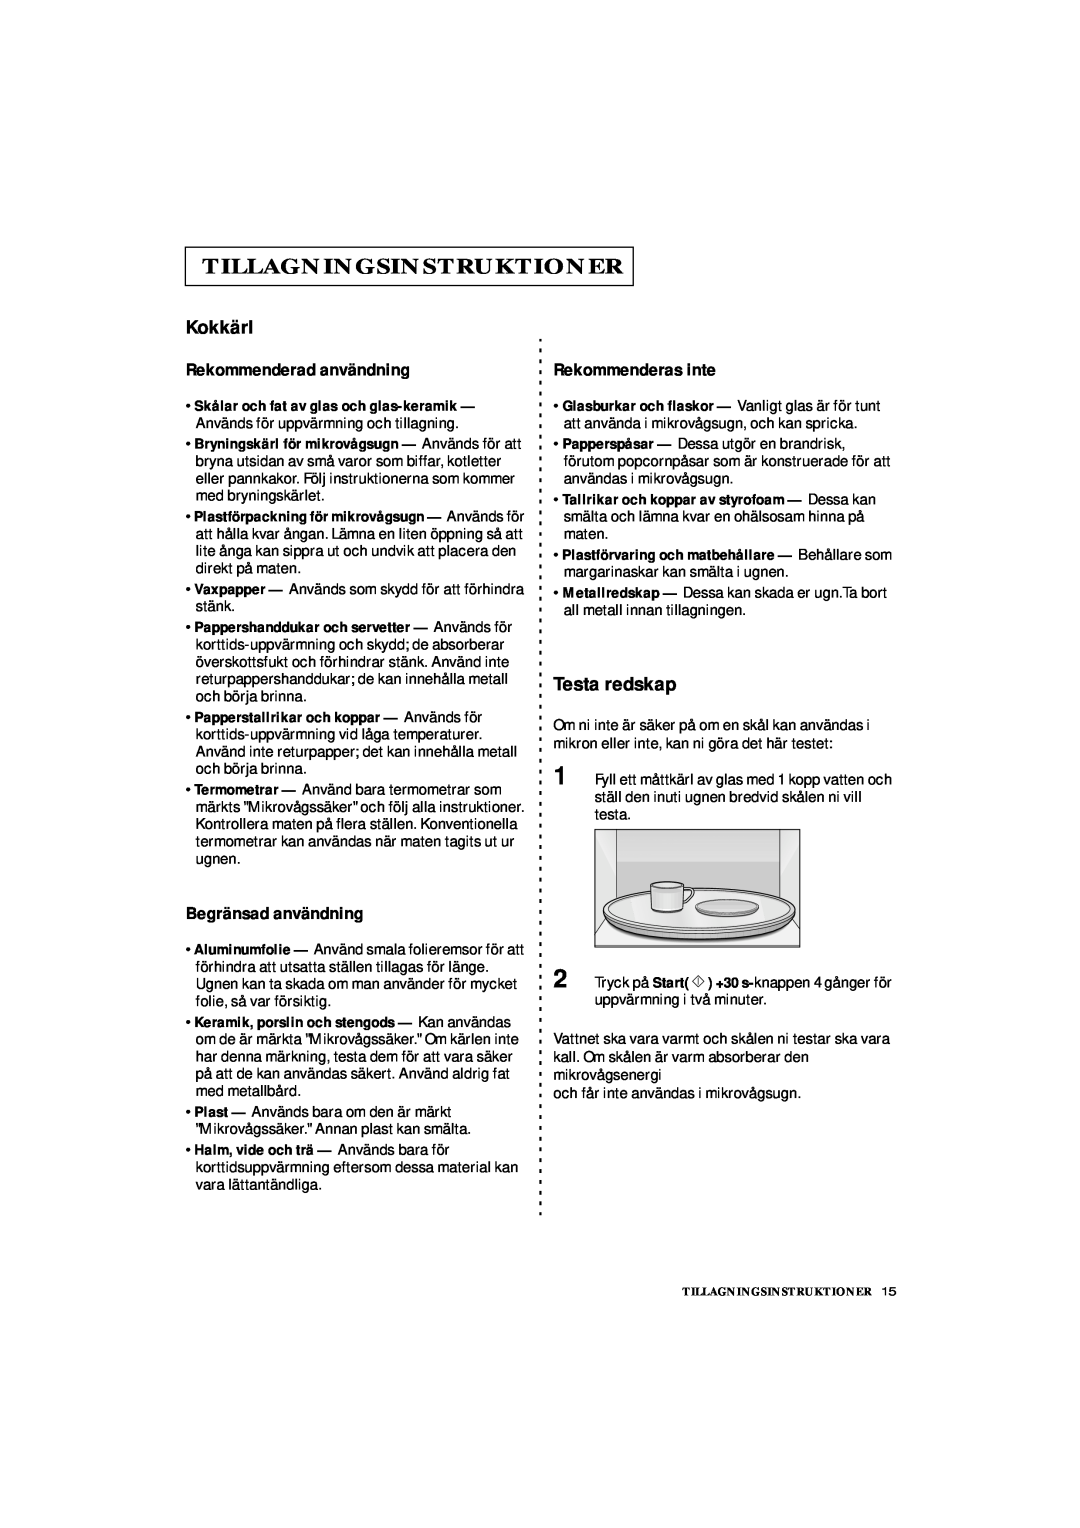 Samsung DE7711 manual Tillagningsinstruktioner, Kokkärl, Testa redskap, Rekommenderad användning, Begränsad användning 